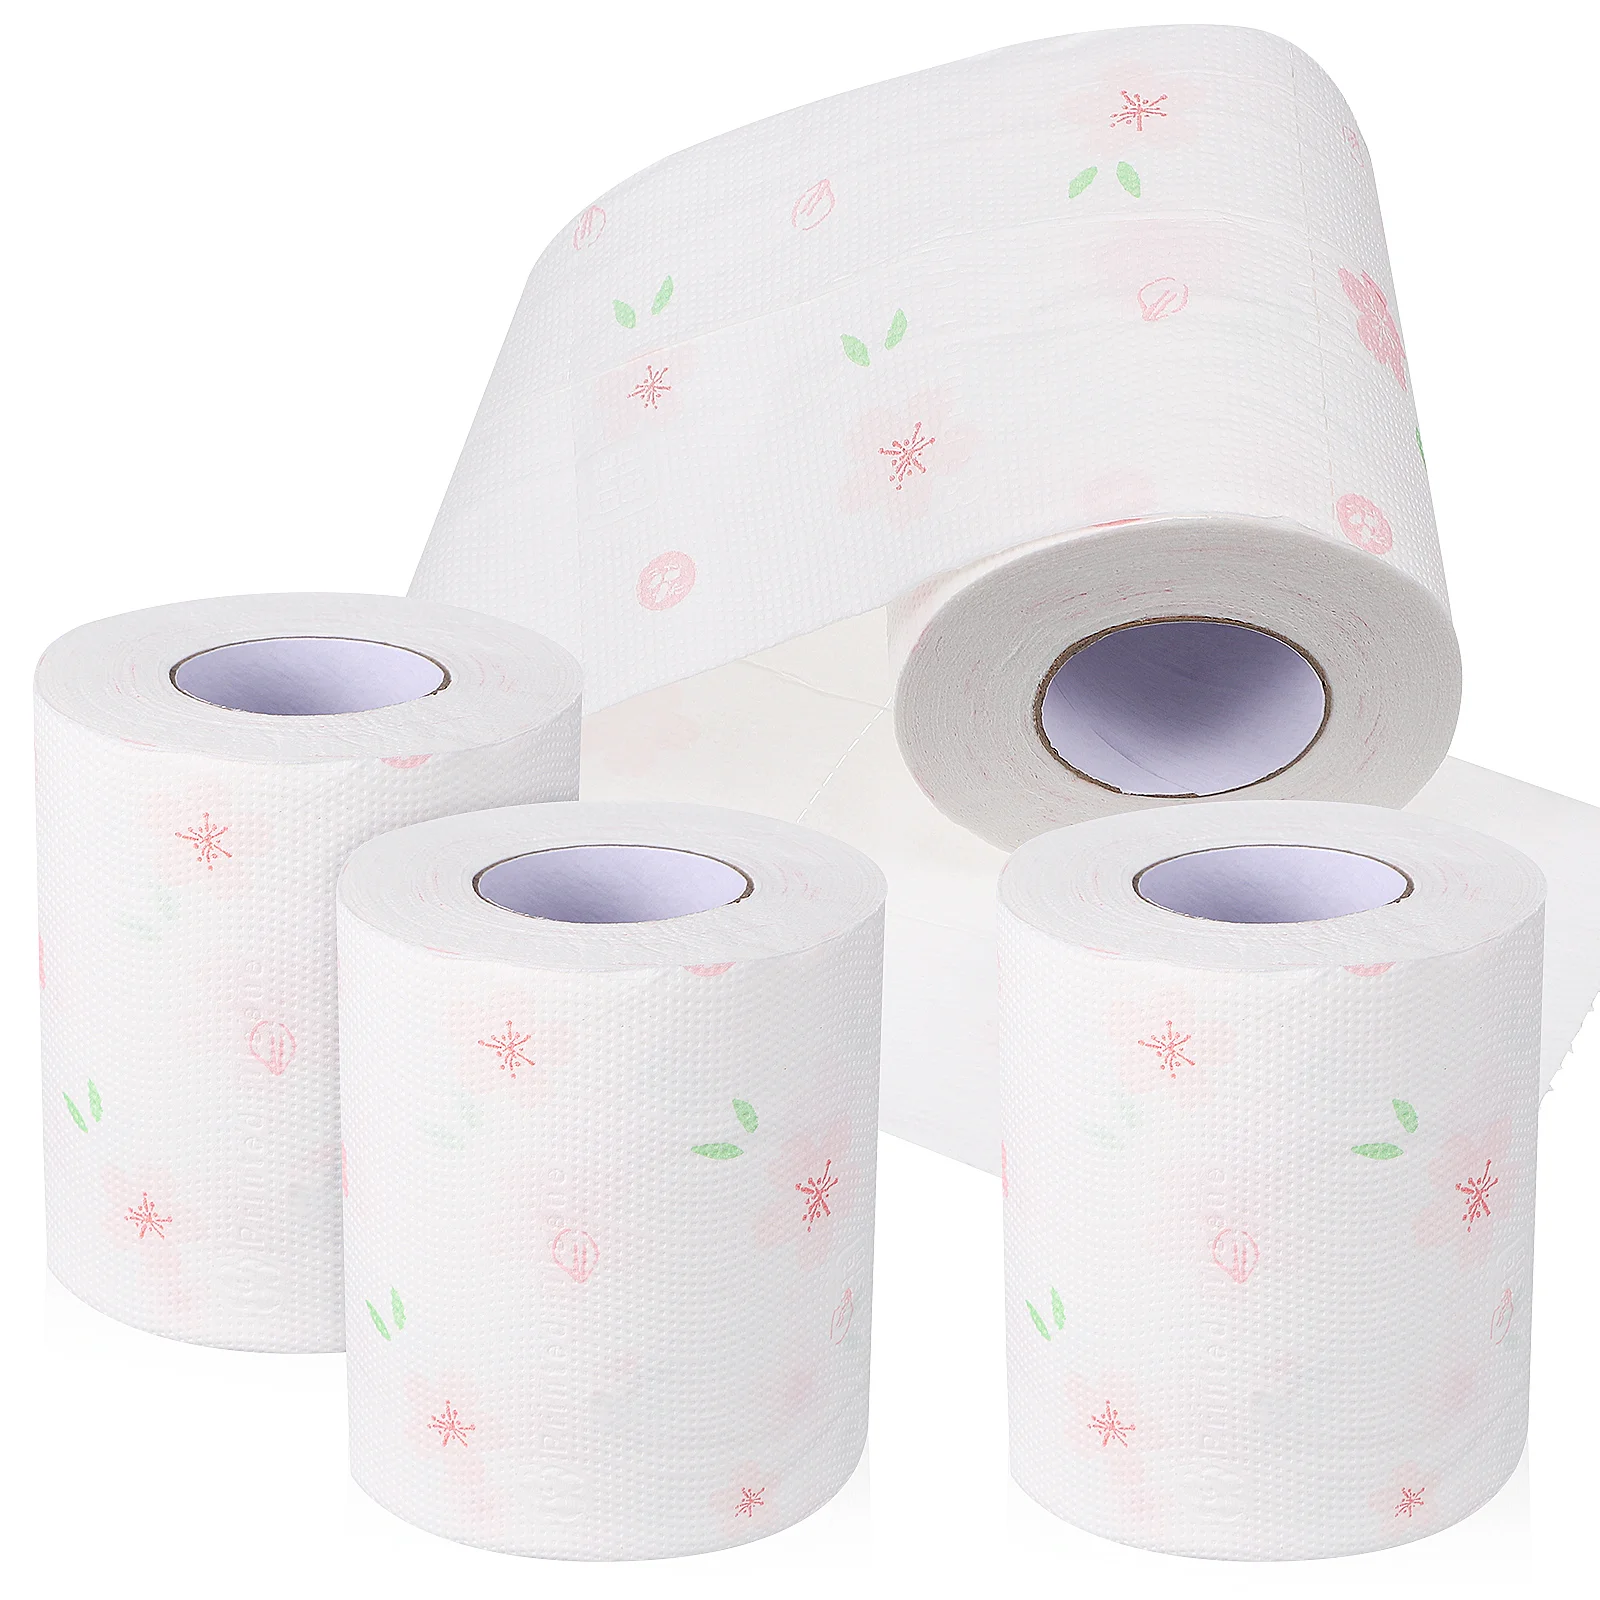 

4 рулона туалетной бумаги с принтом, банные полотенца, салфетки для ванной комнаты, цветочный узор, розовый цвет